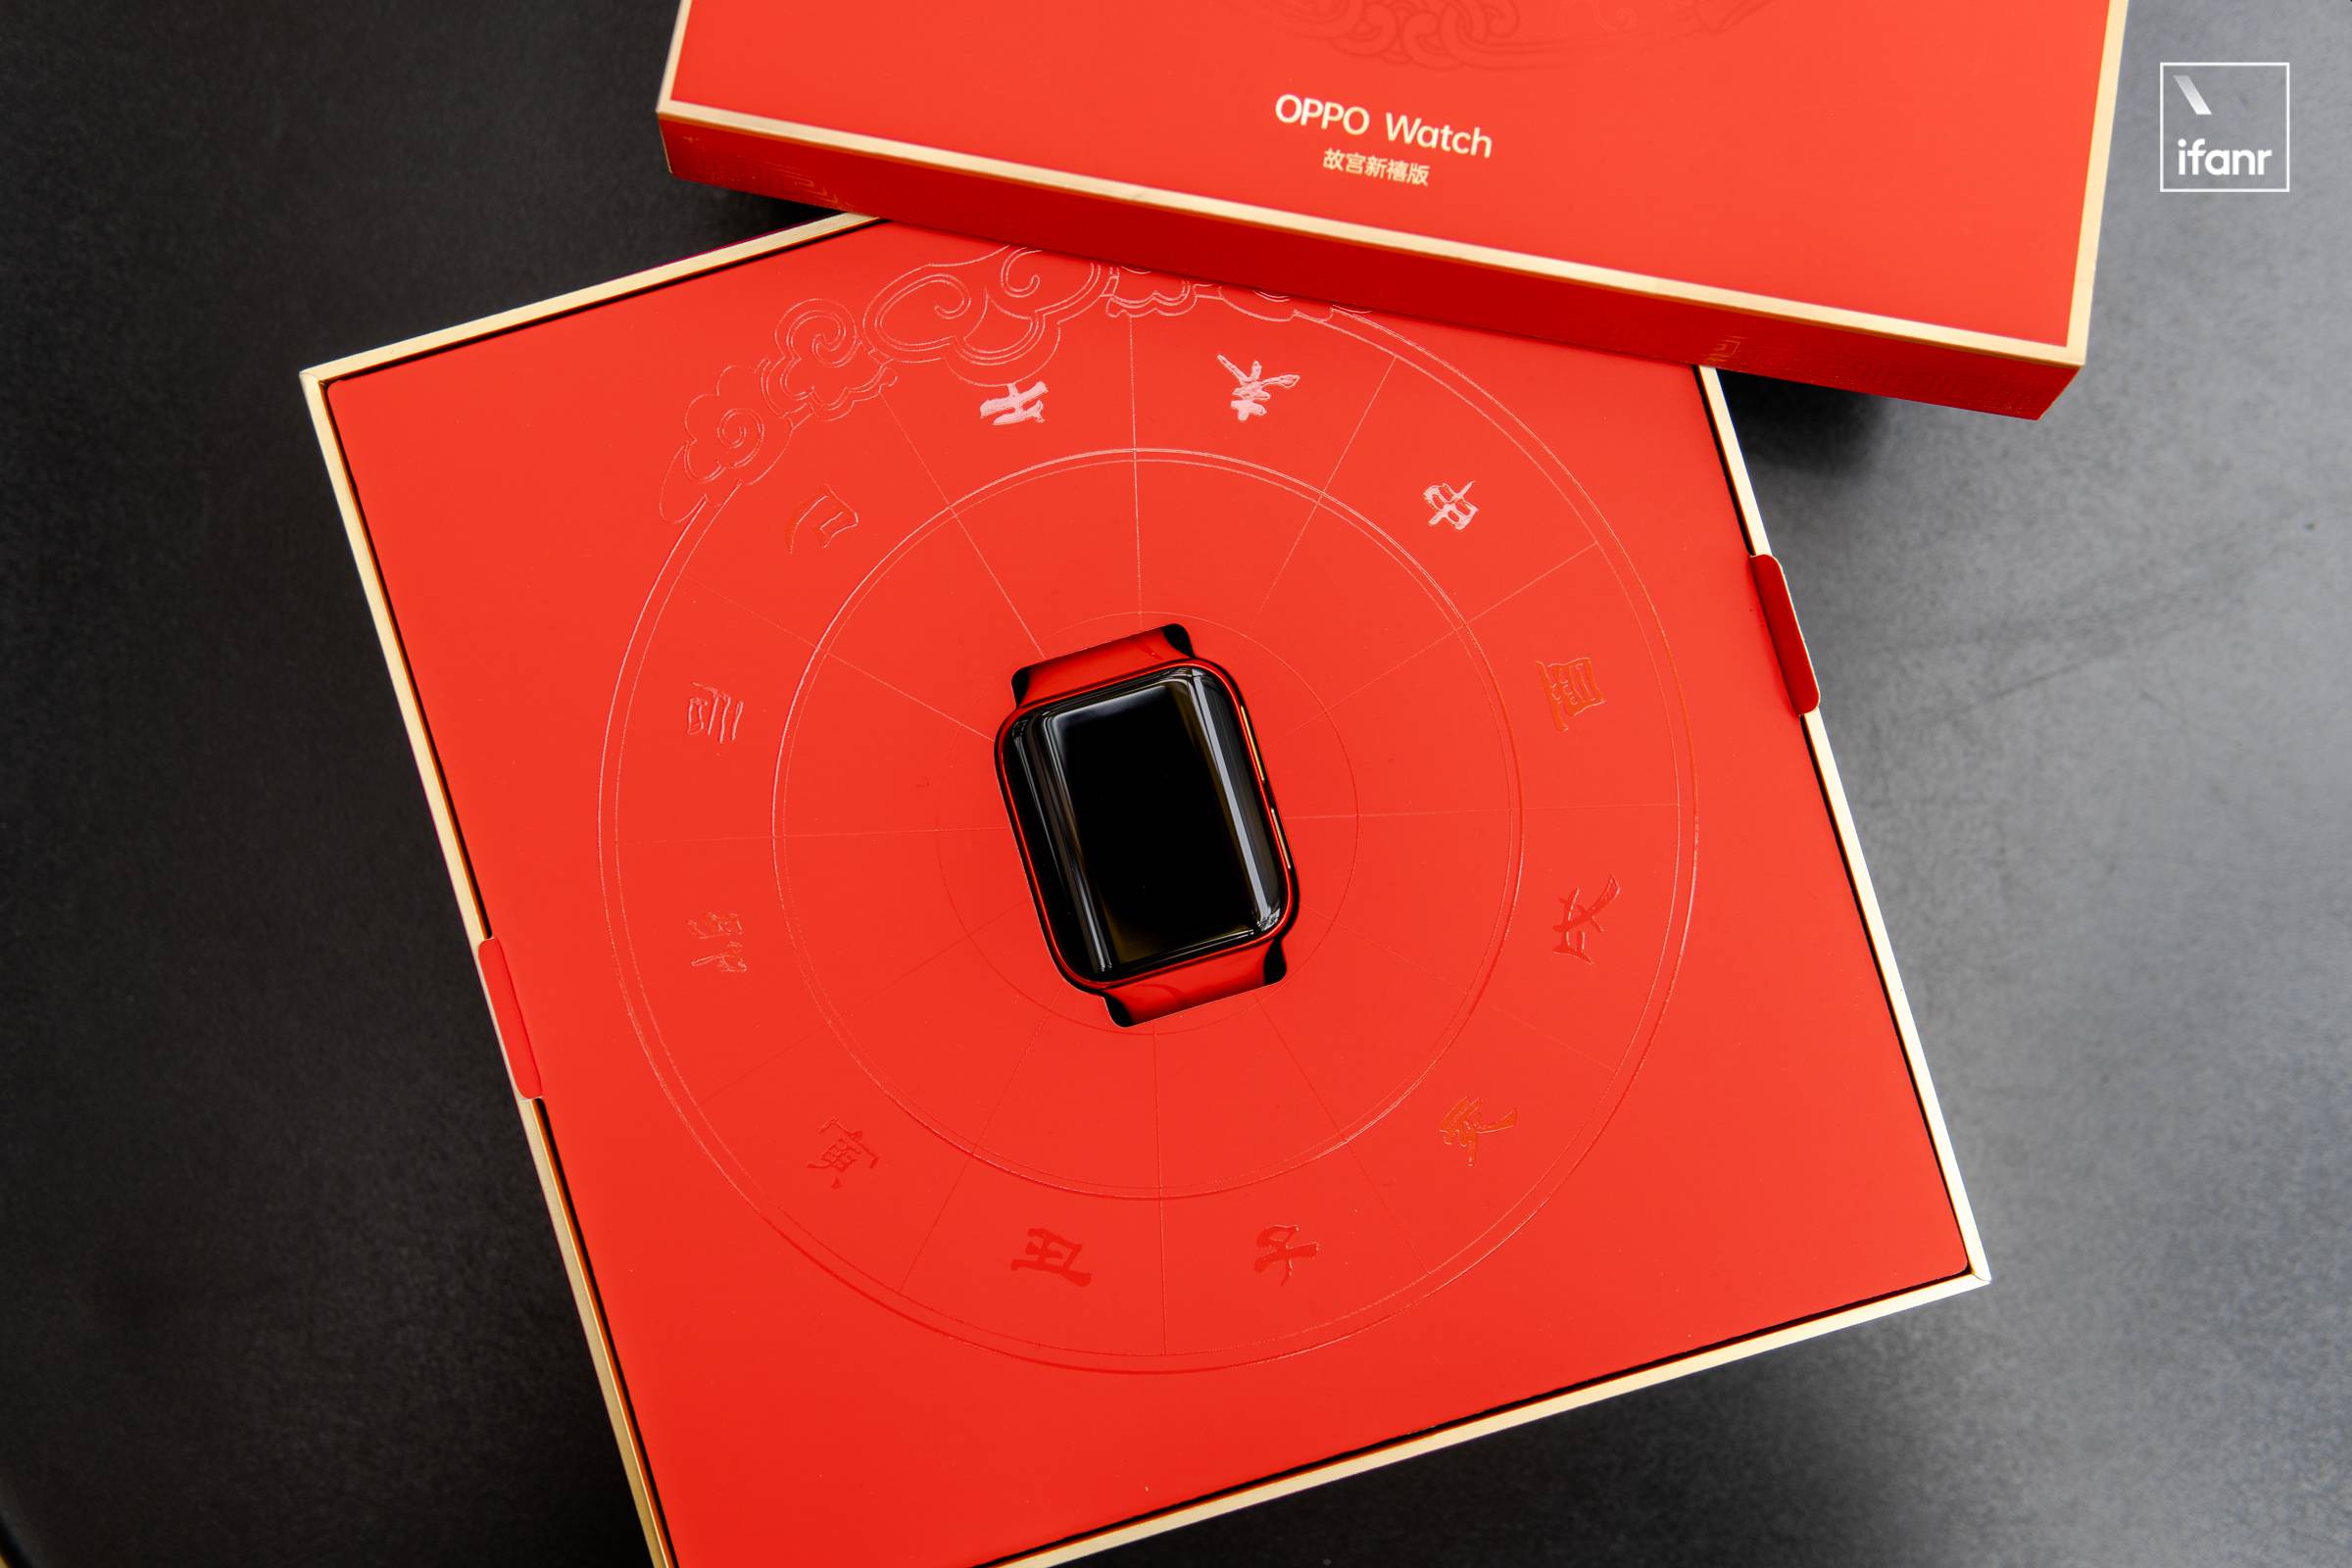 DSC04079 6 - OPPO x Forbidden City Smart Wearable Co-branded Series Picture Reward: “Red” è il leader, “Gold” è pieno di giada